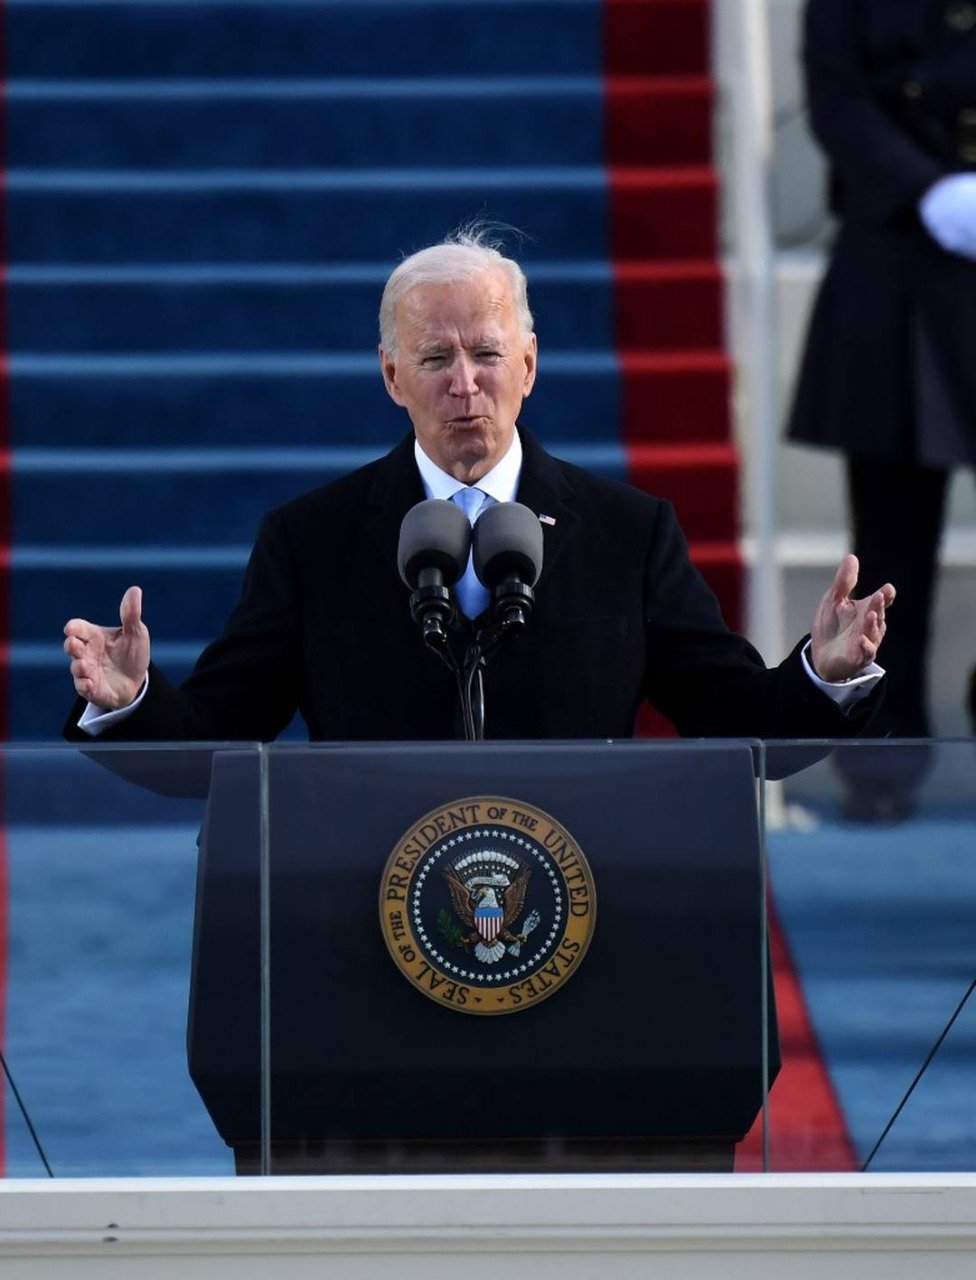 "Hoje é o dia da democracia", afirma Biden em seu discurso - Imagem 1